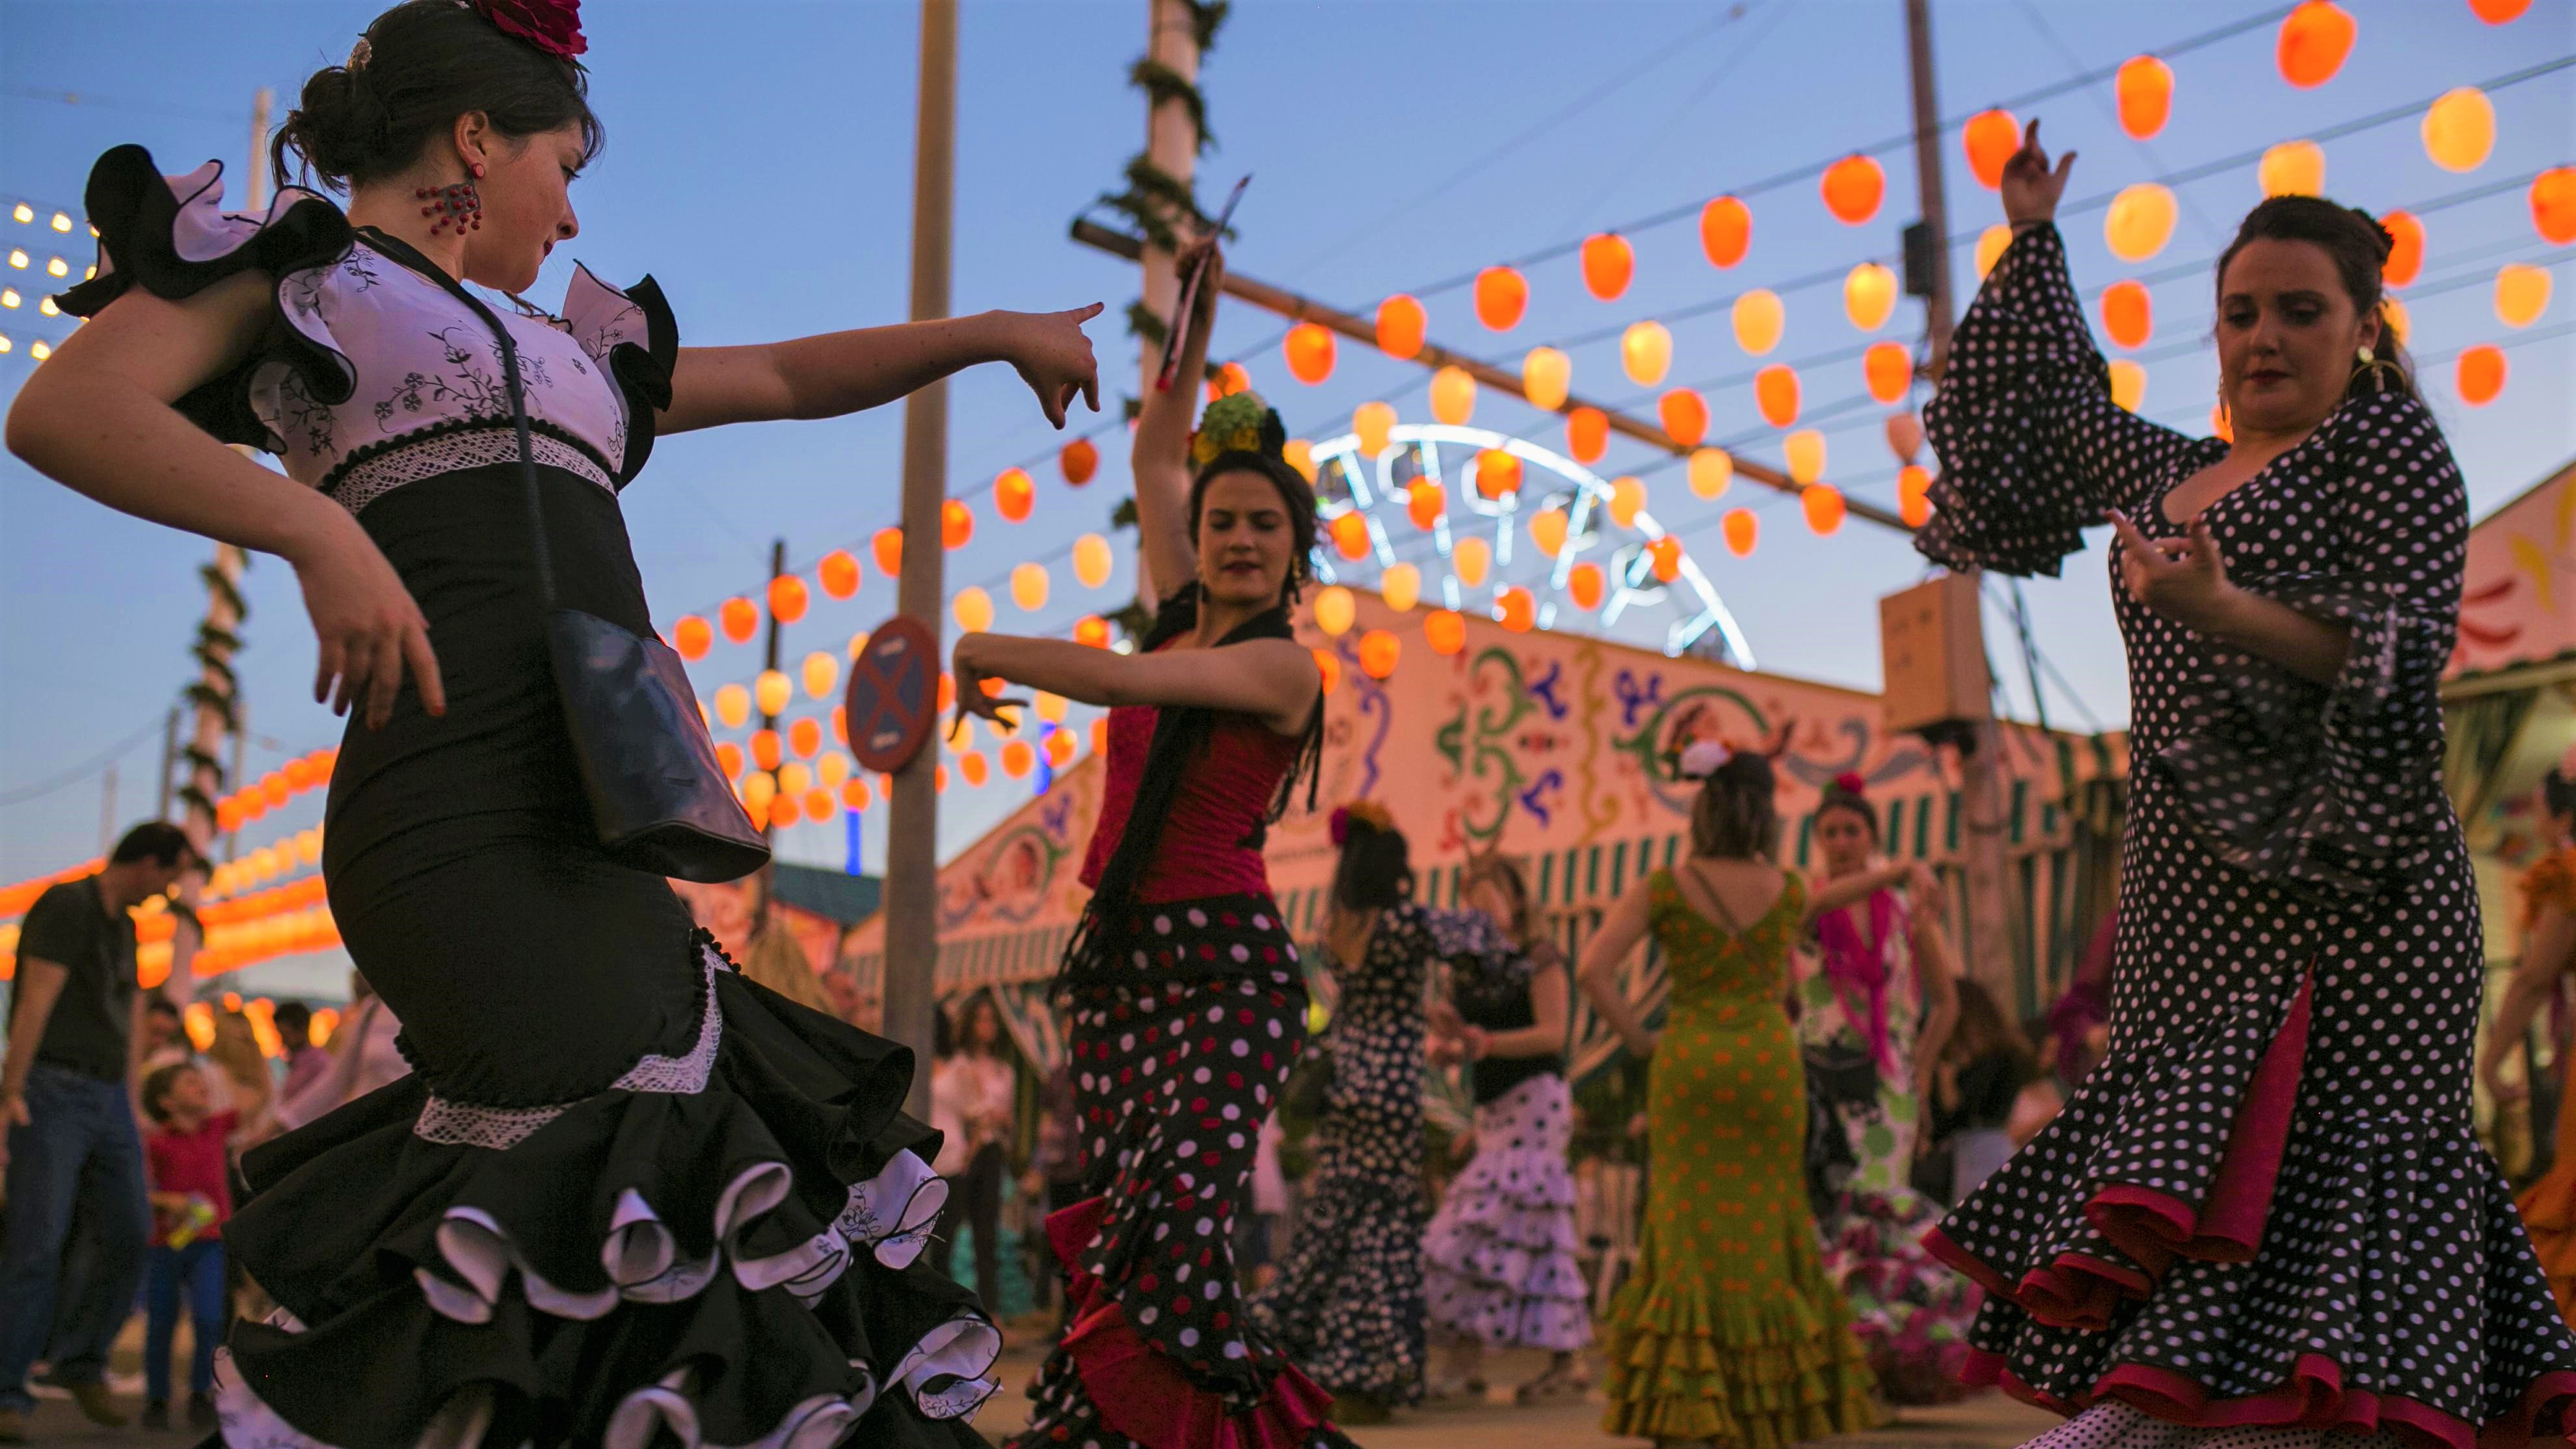 Feria de Abril Barcelone flamenco Andalousie danse musique culture Espagne femmes Photo EP